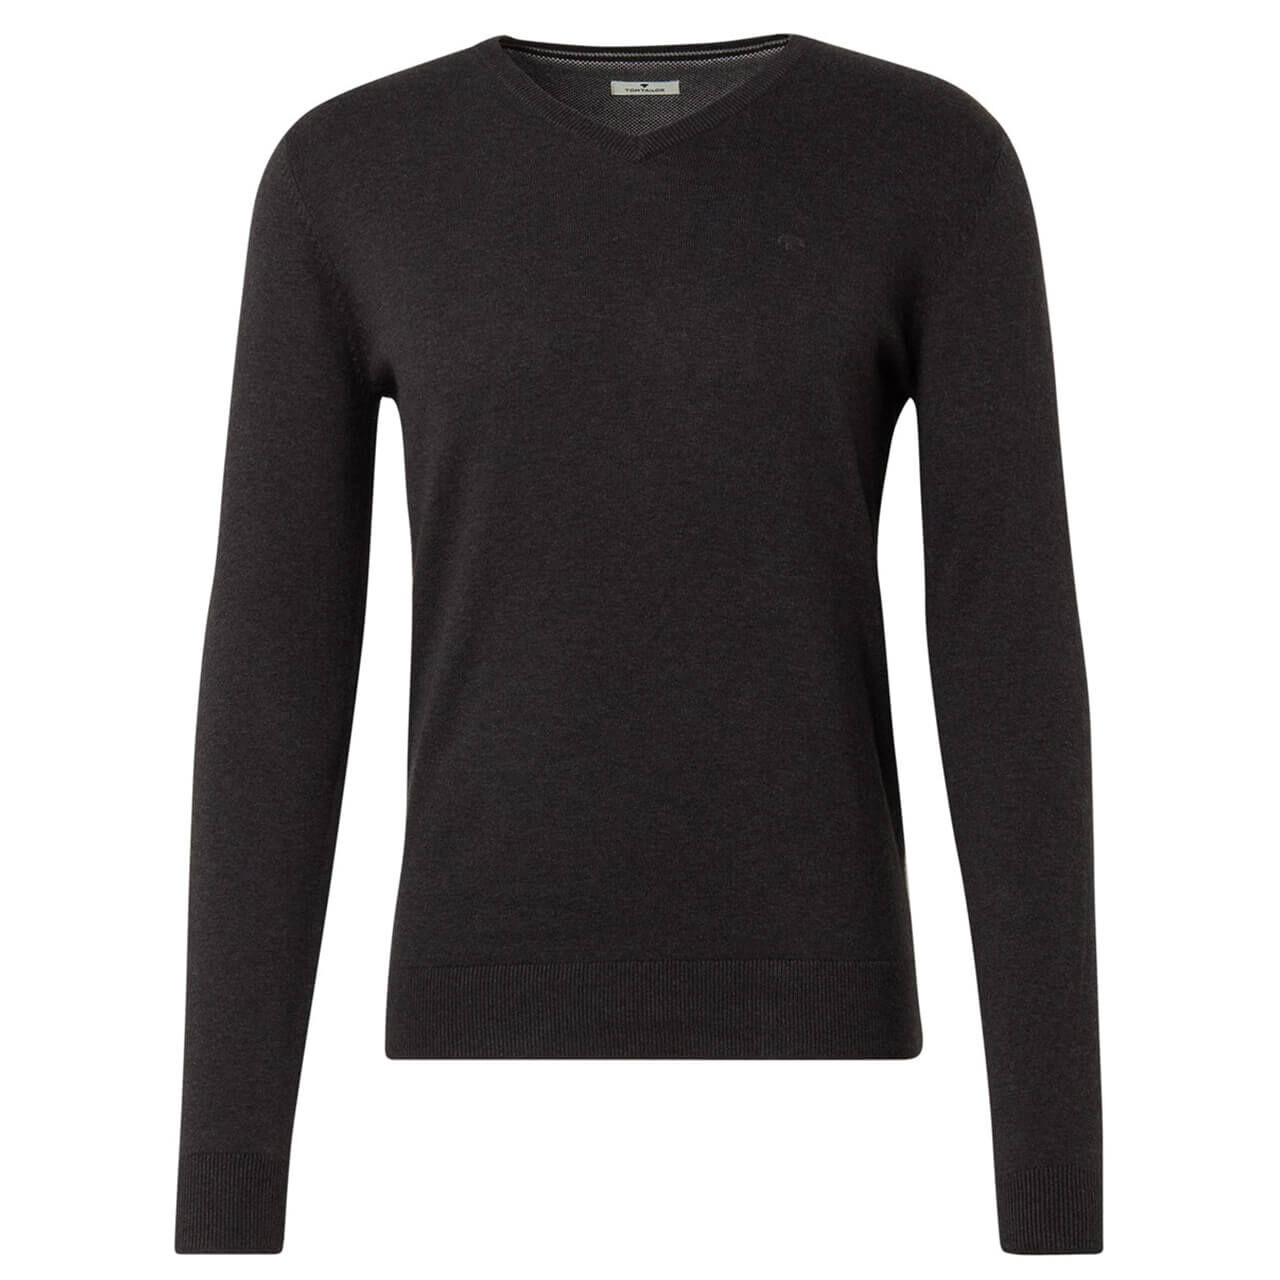 Tom Tailor Basic V-Neck Sweater Pullover für Herren in Dunkelgrau, FarbNr.: 10617